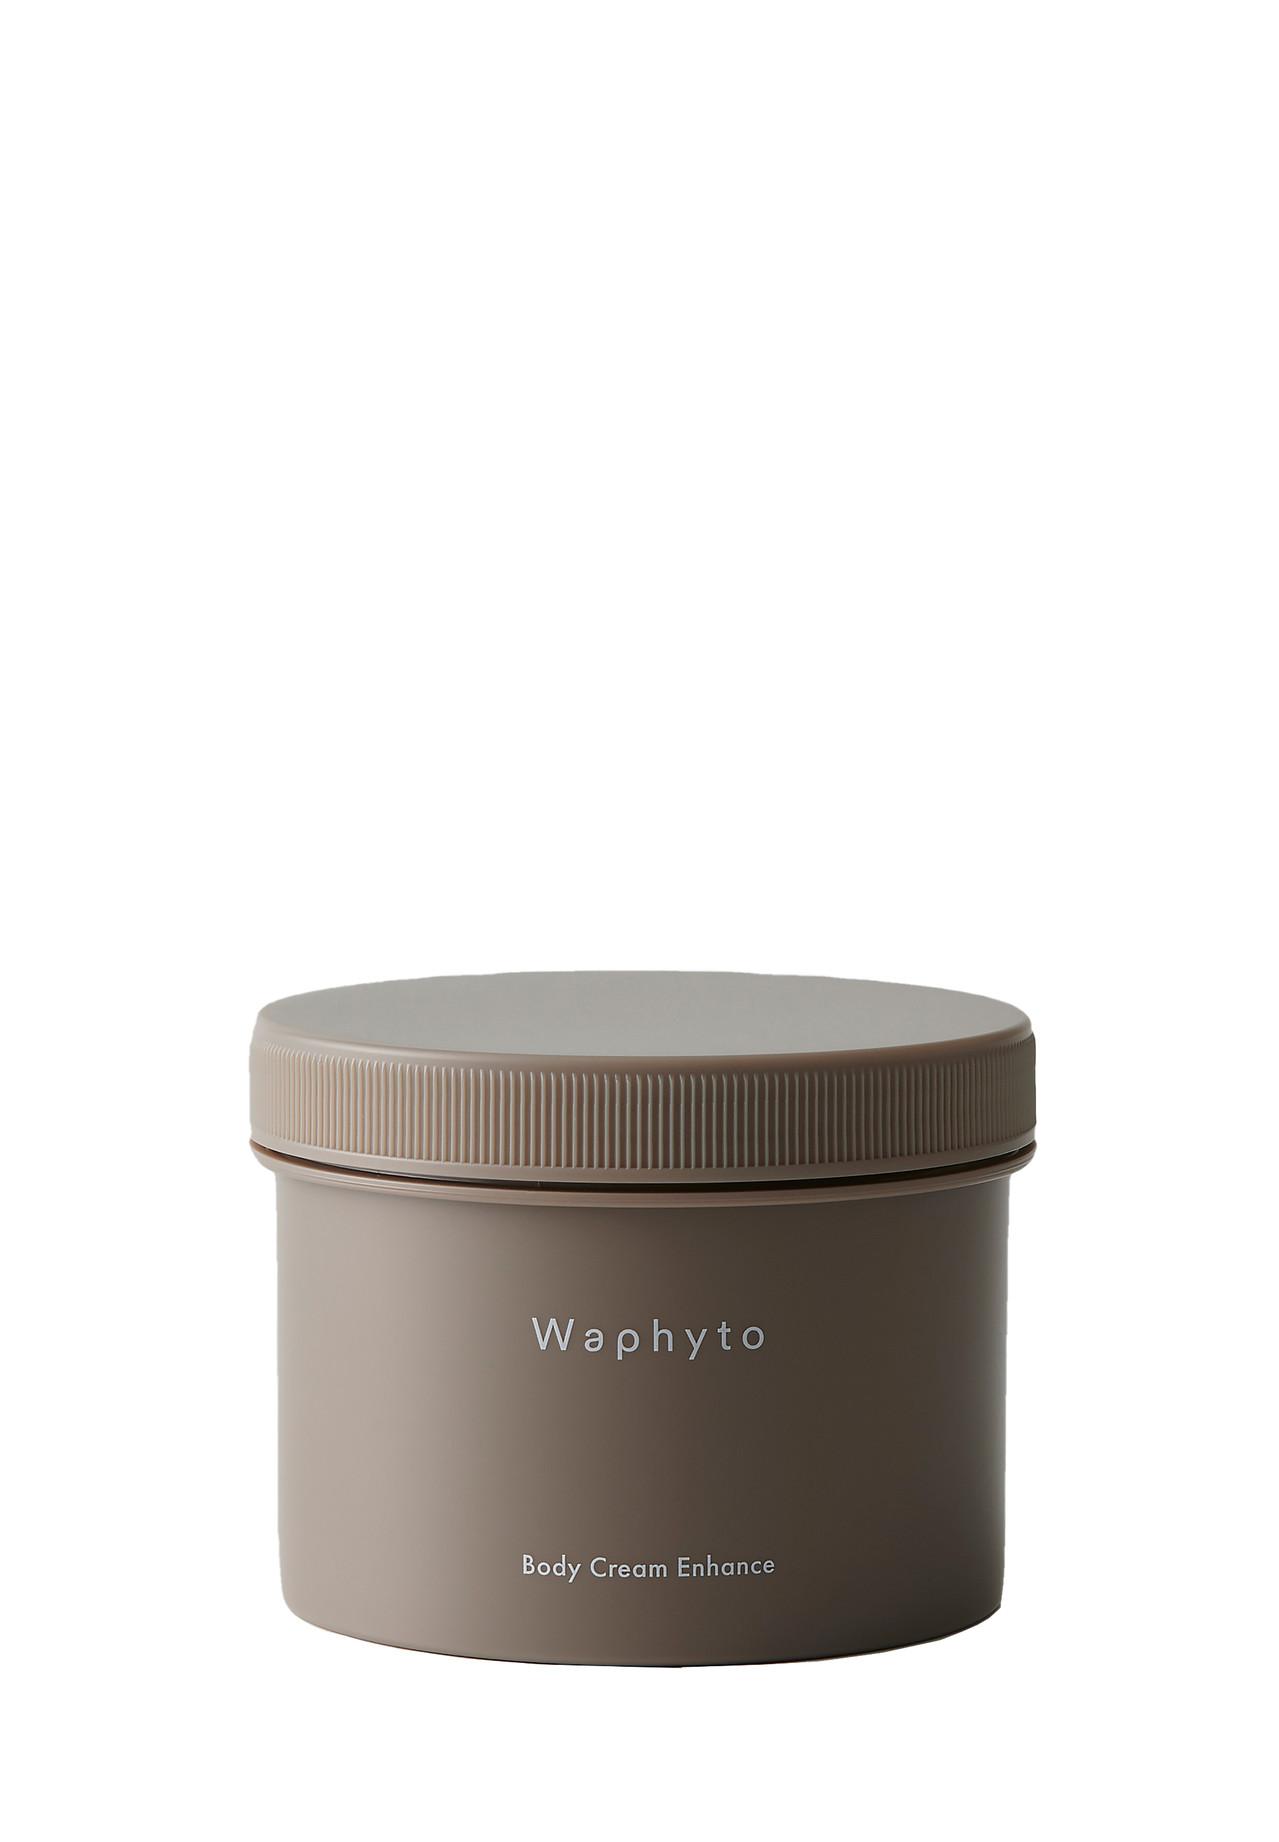 【１着でも送料無料】 公式 Waphyto ワフィト ボディクリーム エンハンス 200g Body Cream Enhance